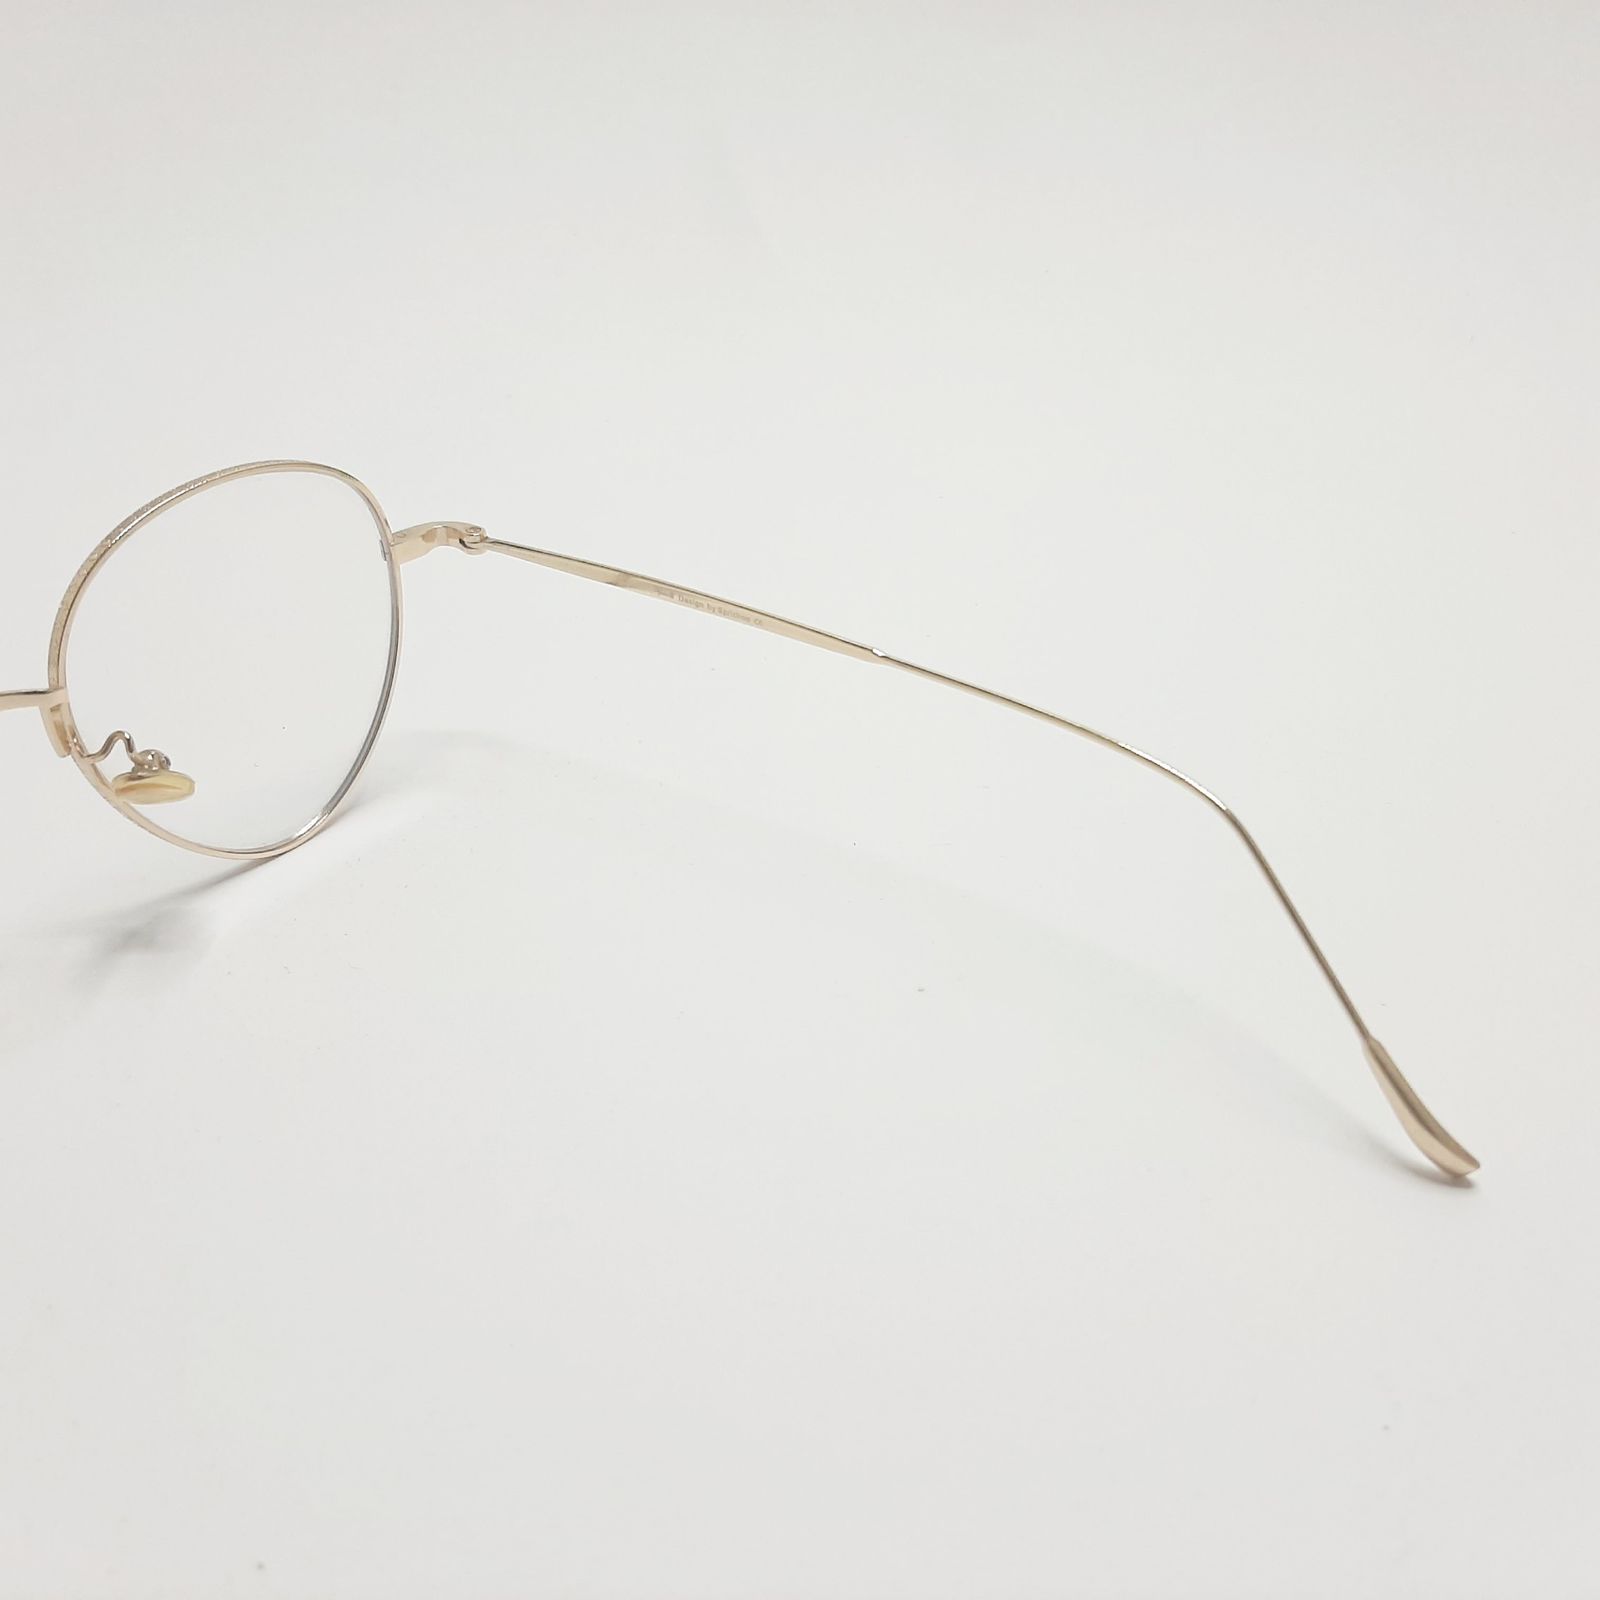 فریم عینک طبی پاواروتی مدل P52059c6 -  - 7